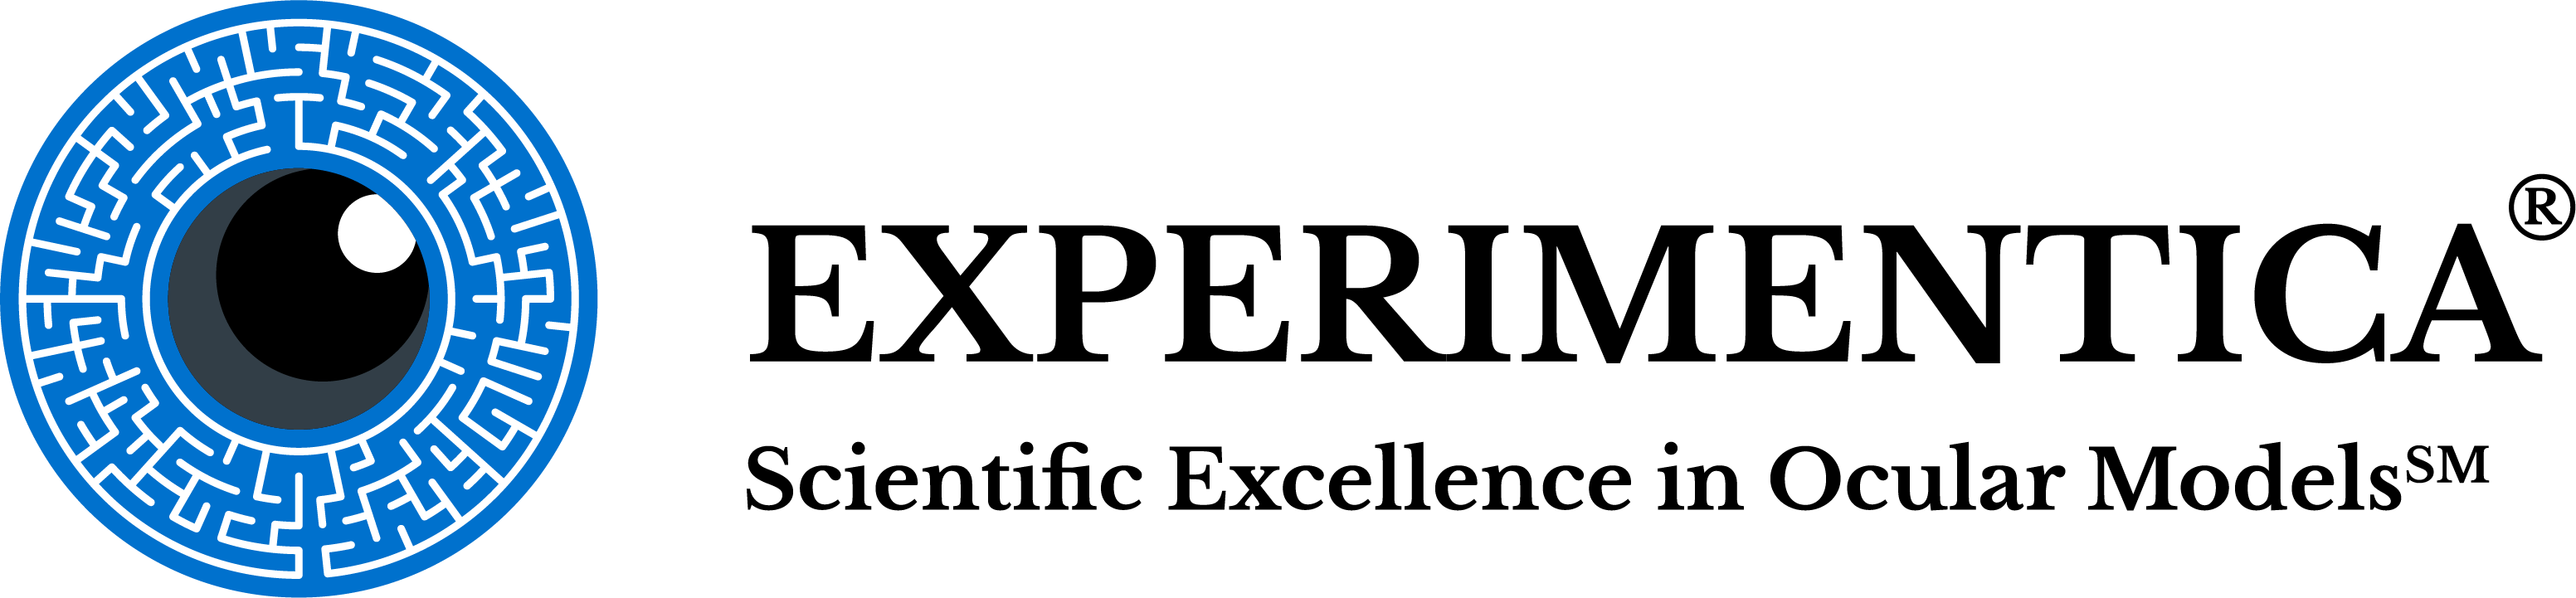 Experimentica_Logo